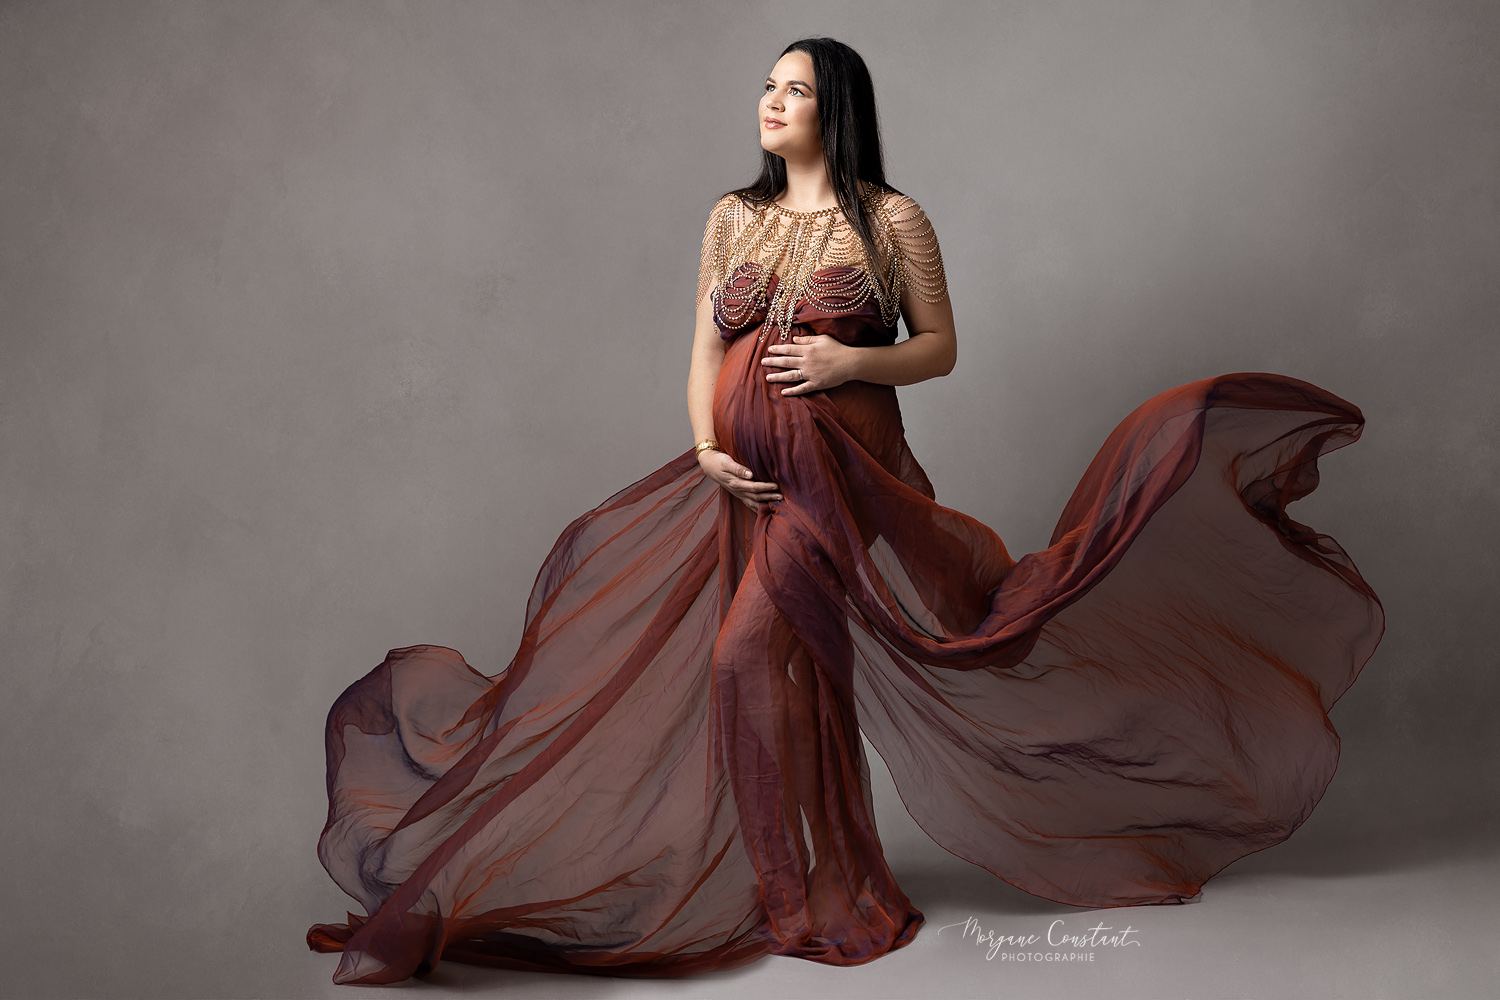 femme enceinte avec un voilage rouge qui flotte autour d'elle